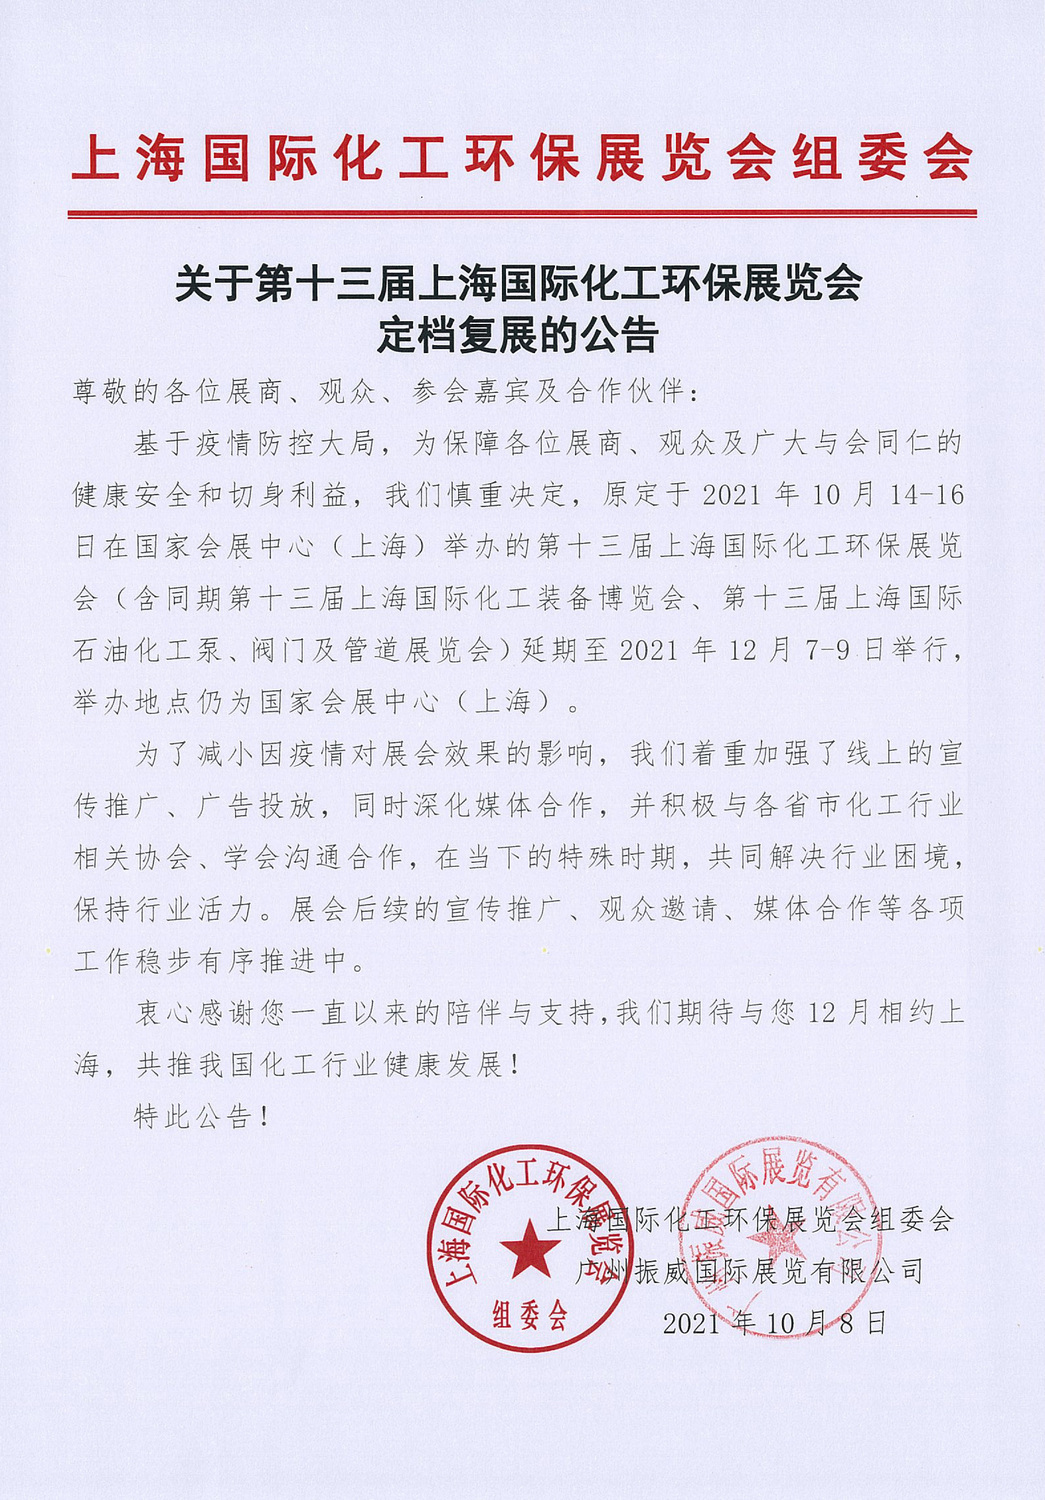 上海化工环保展定档复展公告 (2）.jpg